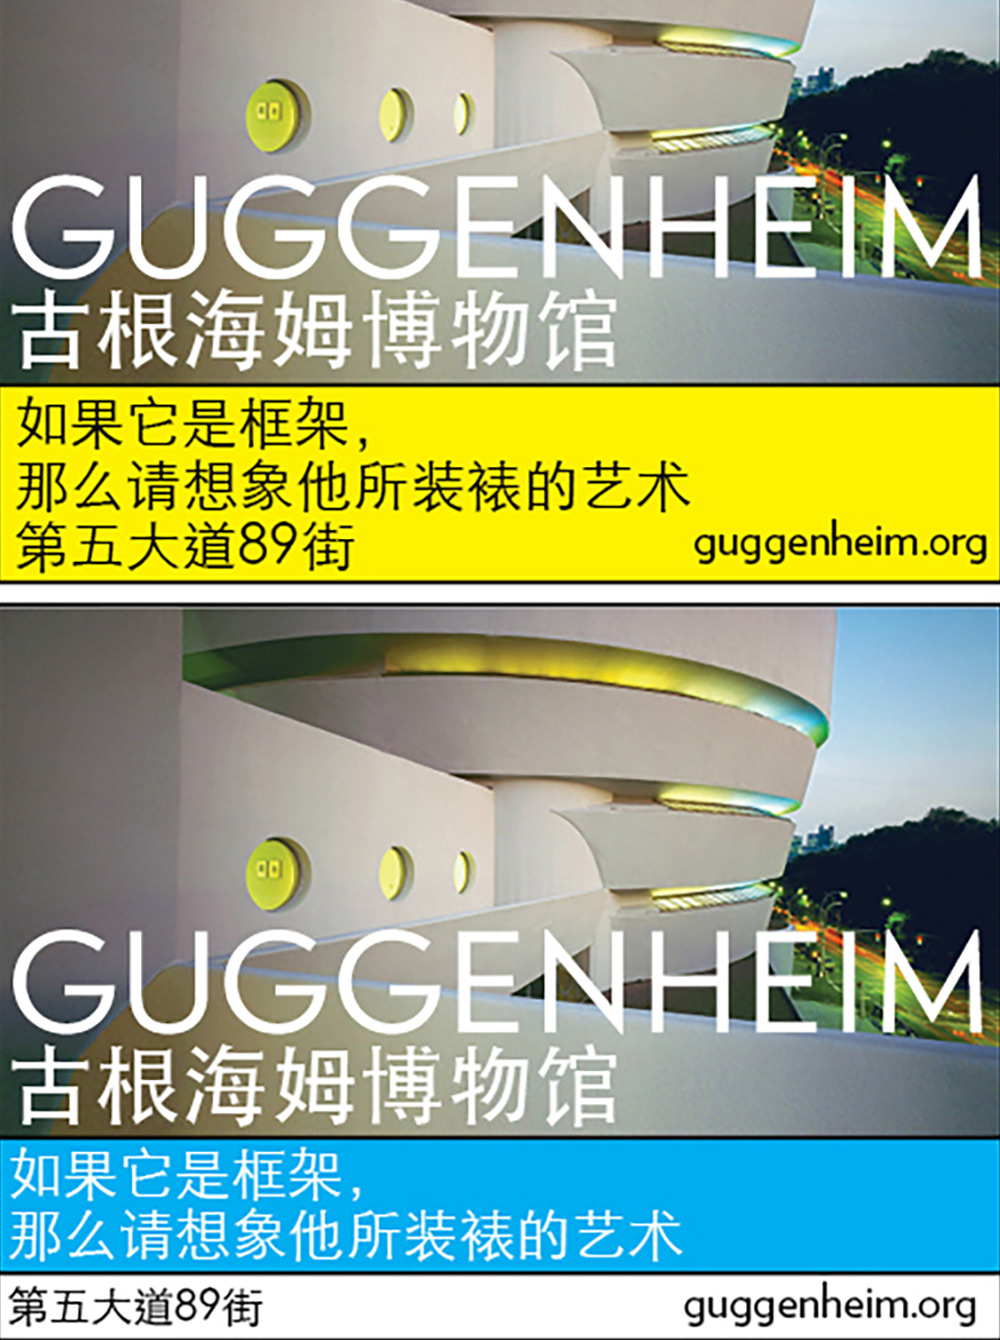 Guggenheim Attract China